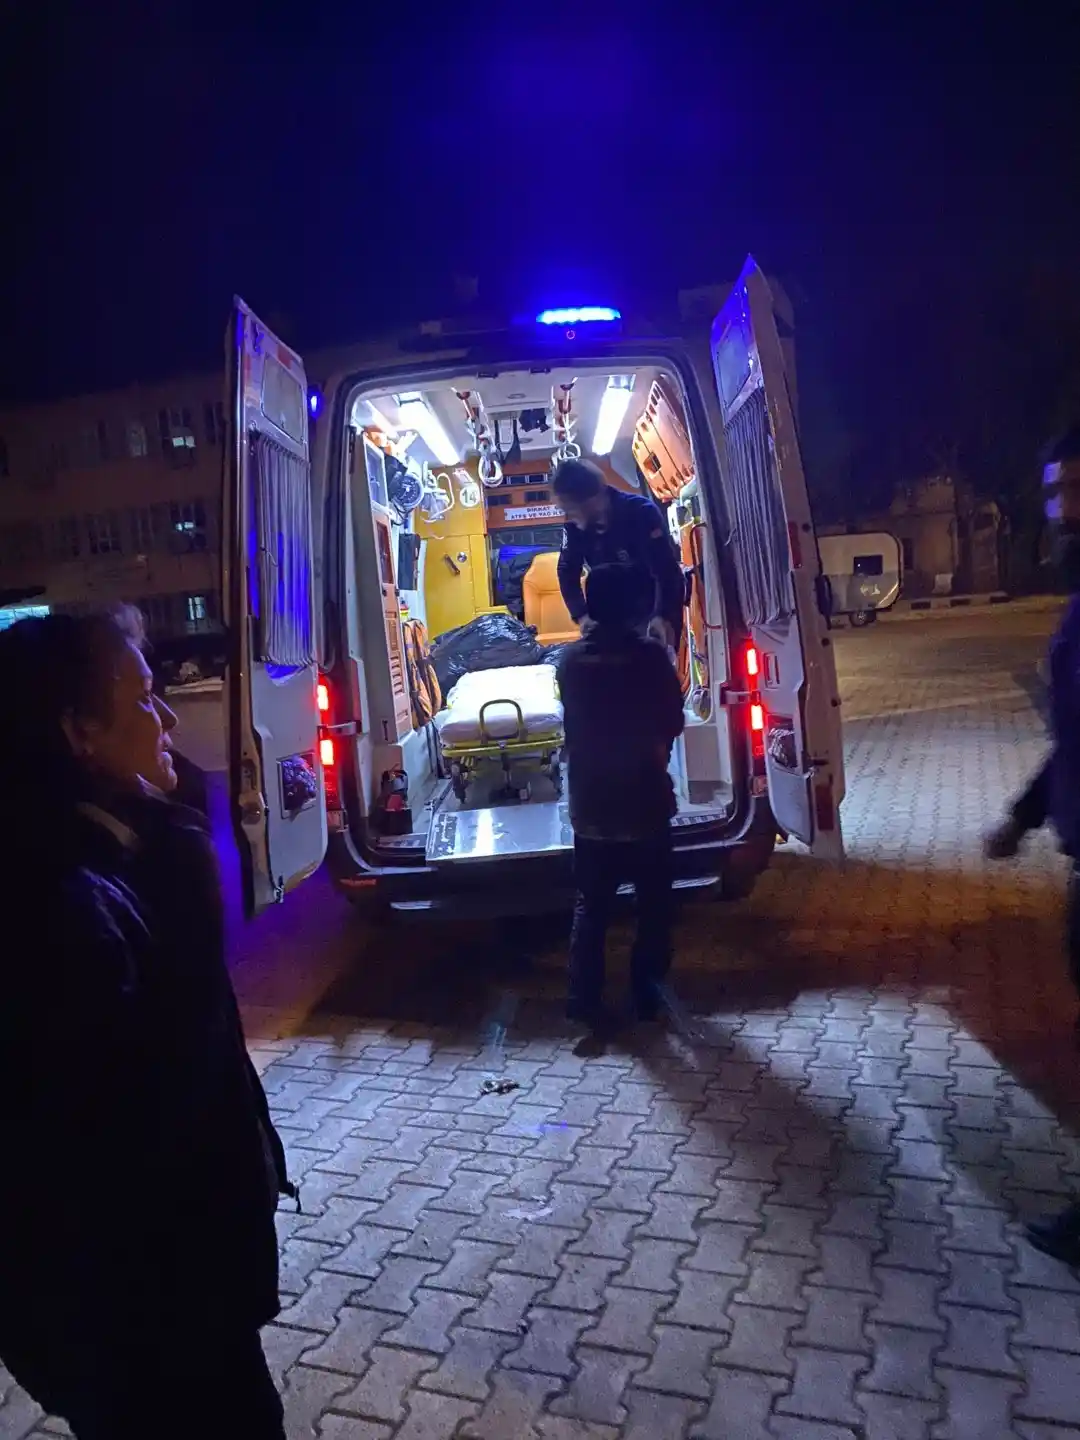 Kocaeli Büyükşehir’in ambulansları depremzedelerin hizmetinde
